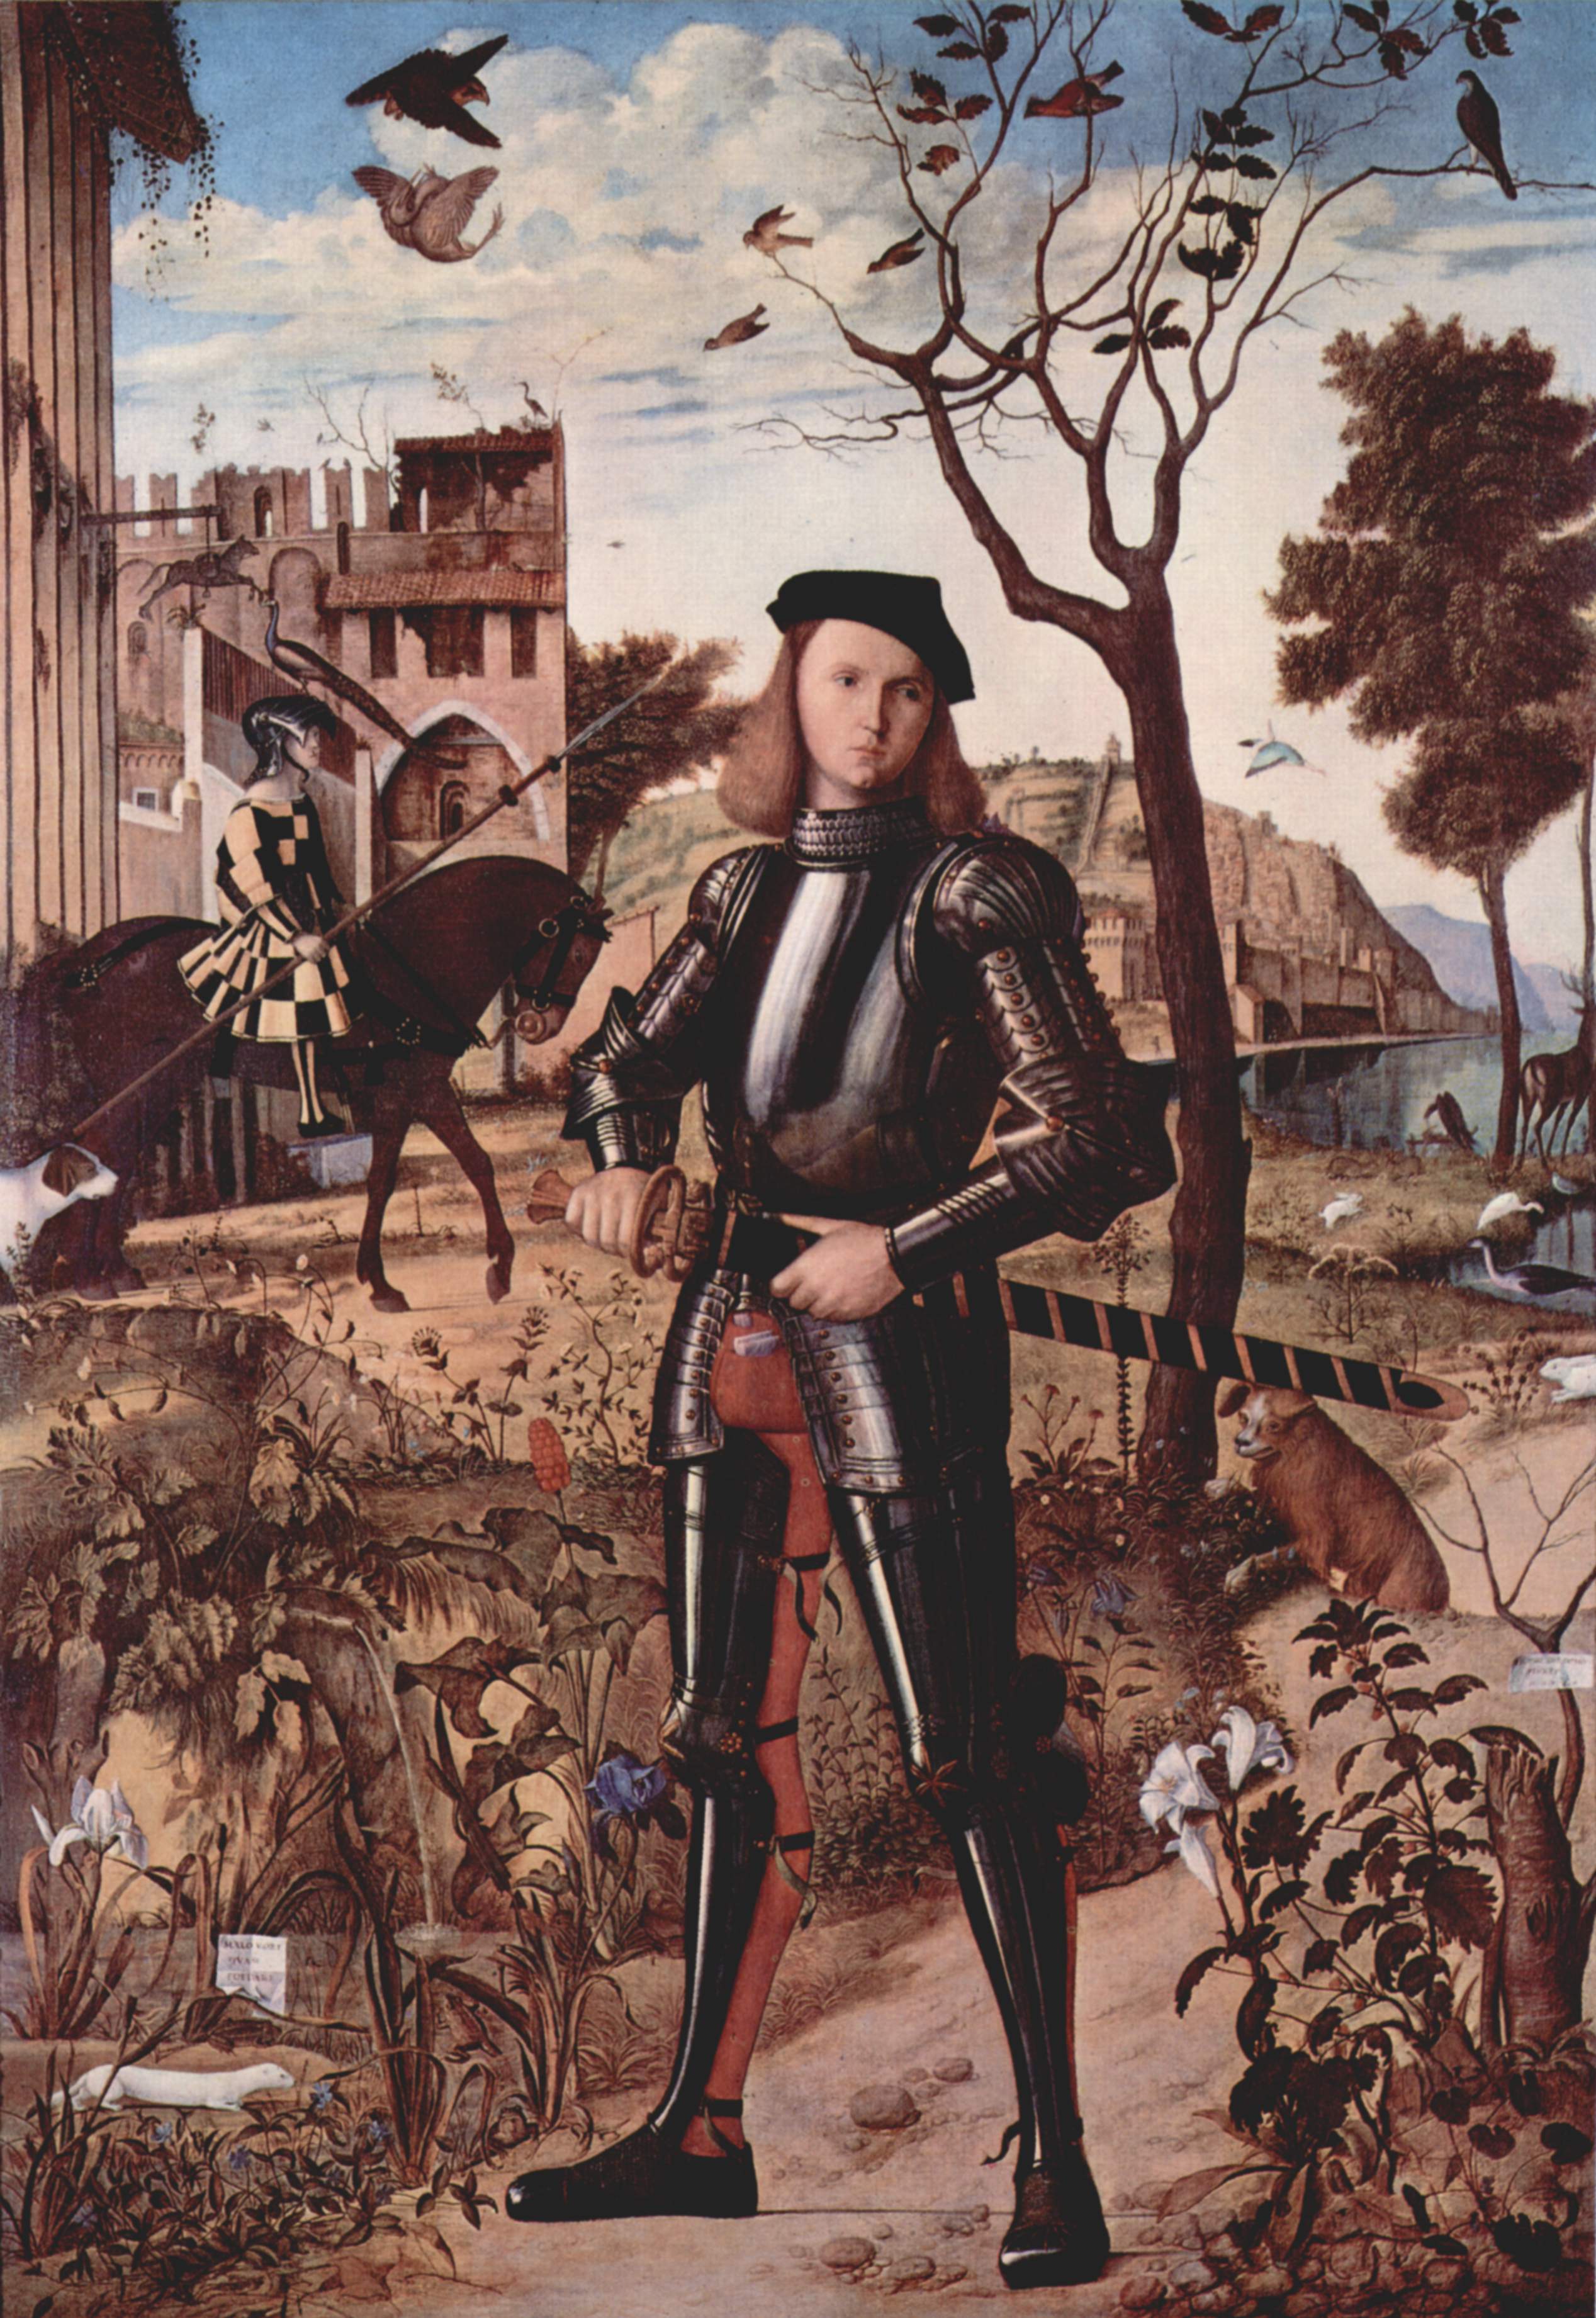 Young Knight in a Landscape by Vittore Carpaccio - 1510 - 218.5 x 151.5 cm Museo Nacional Thyssen-Bornemisza